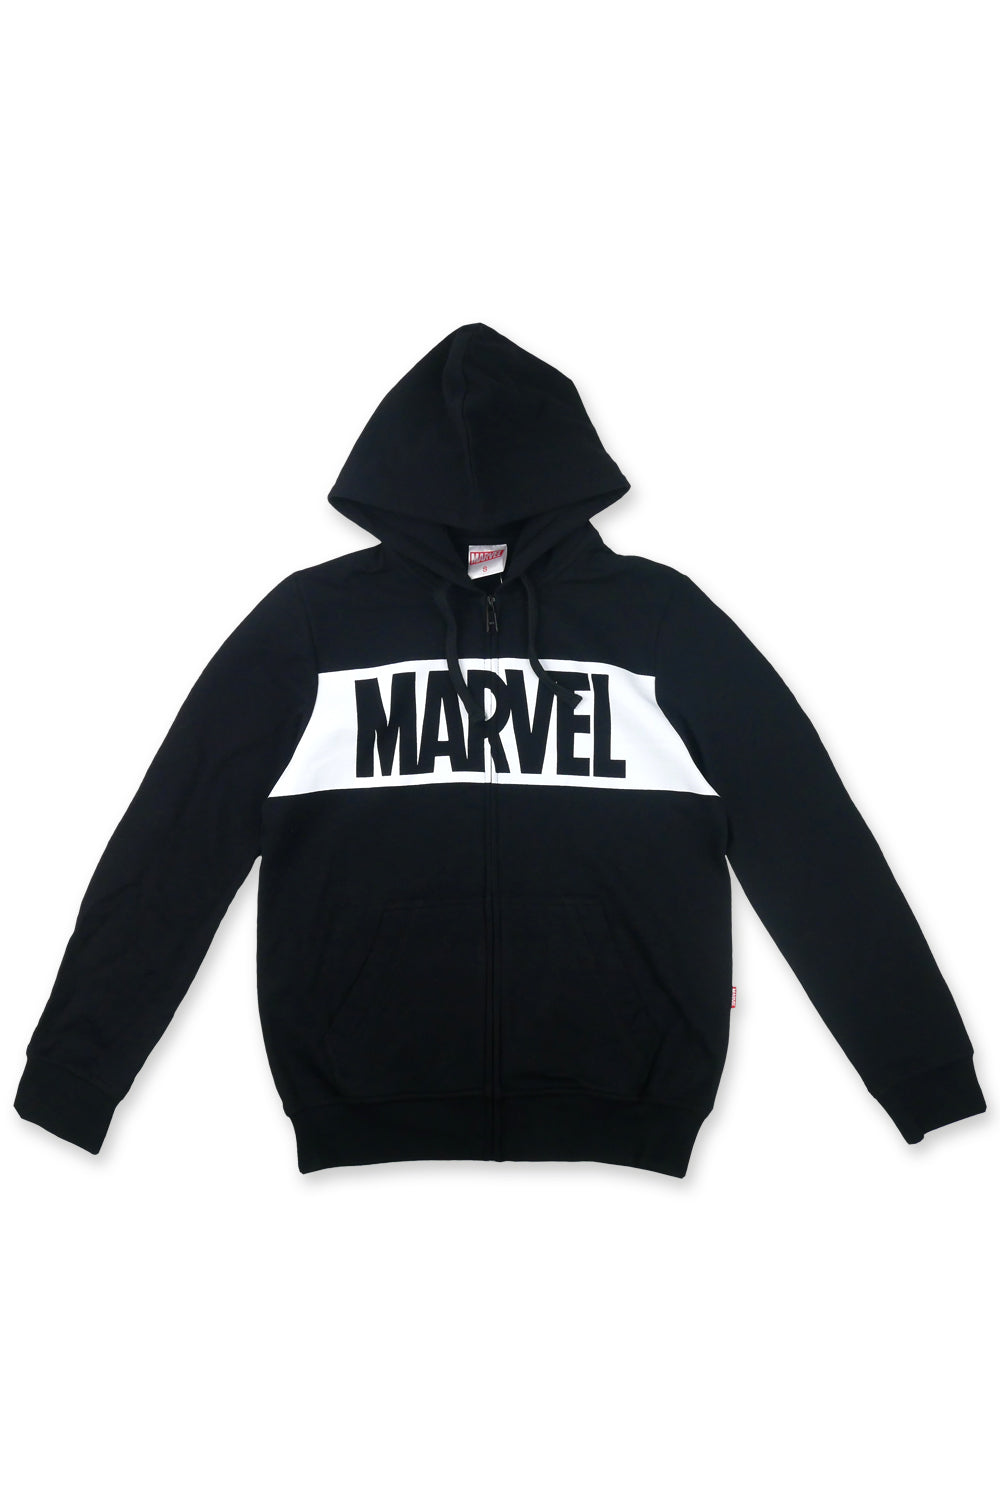 เสื้อ Jacket ผู้ใหญ่มาร์เวล Marvel - Jacket